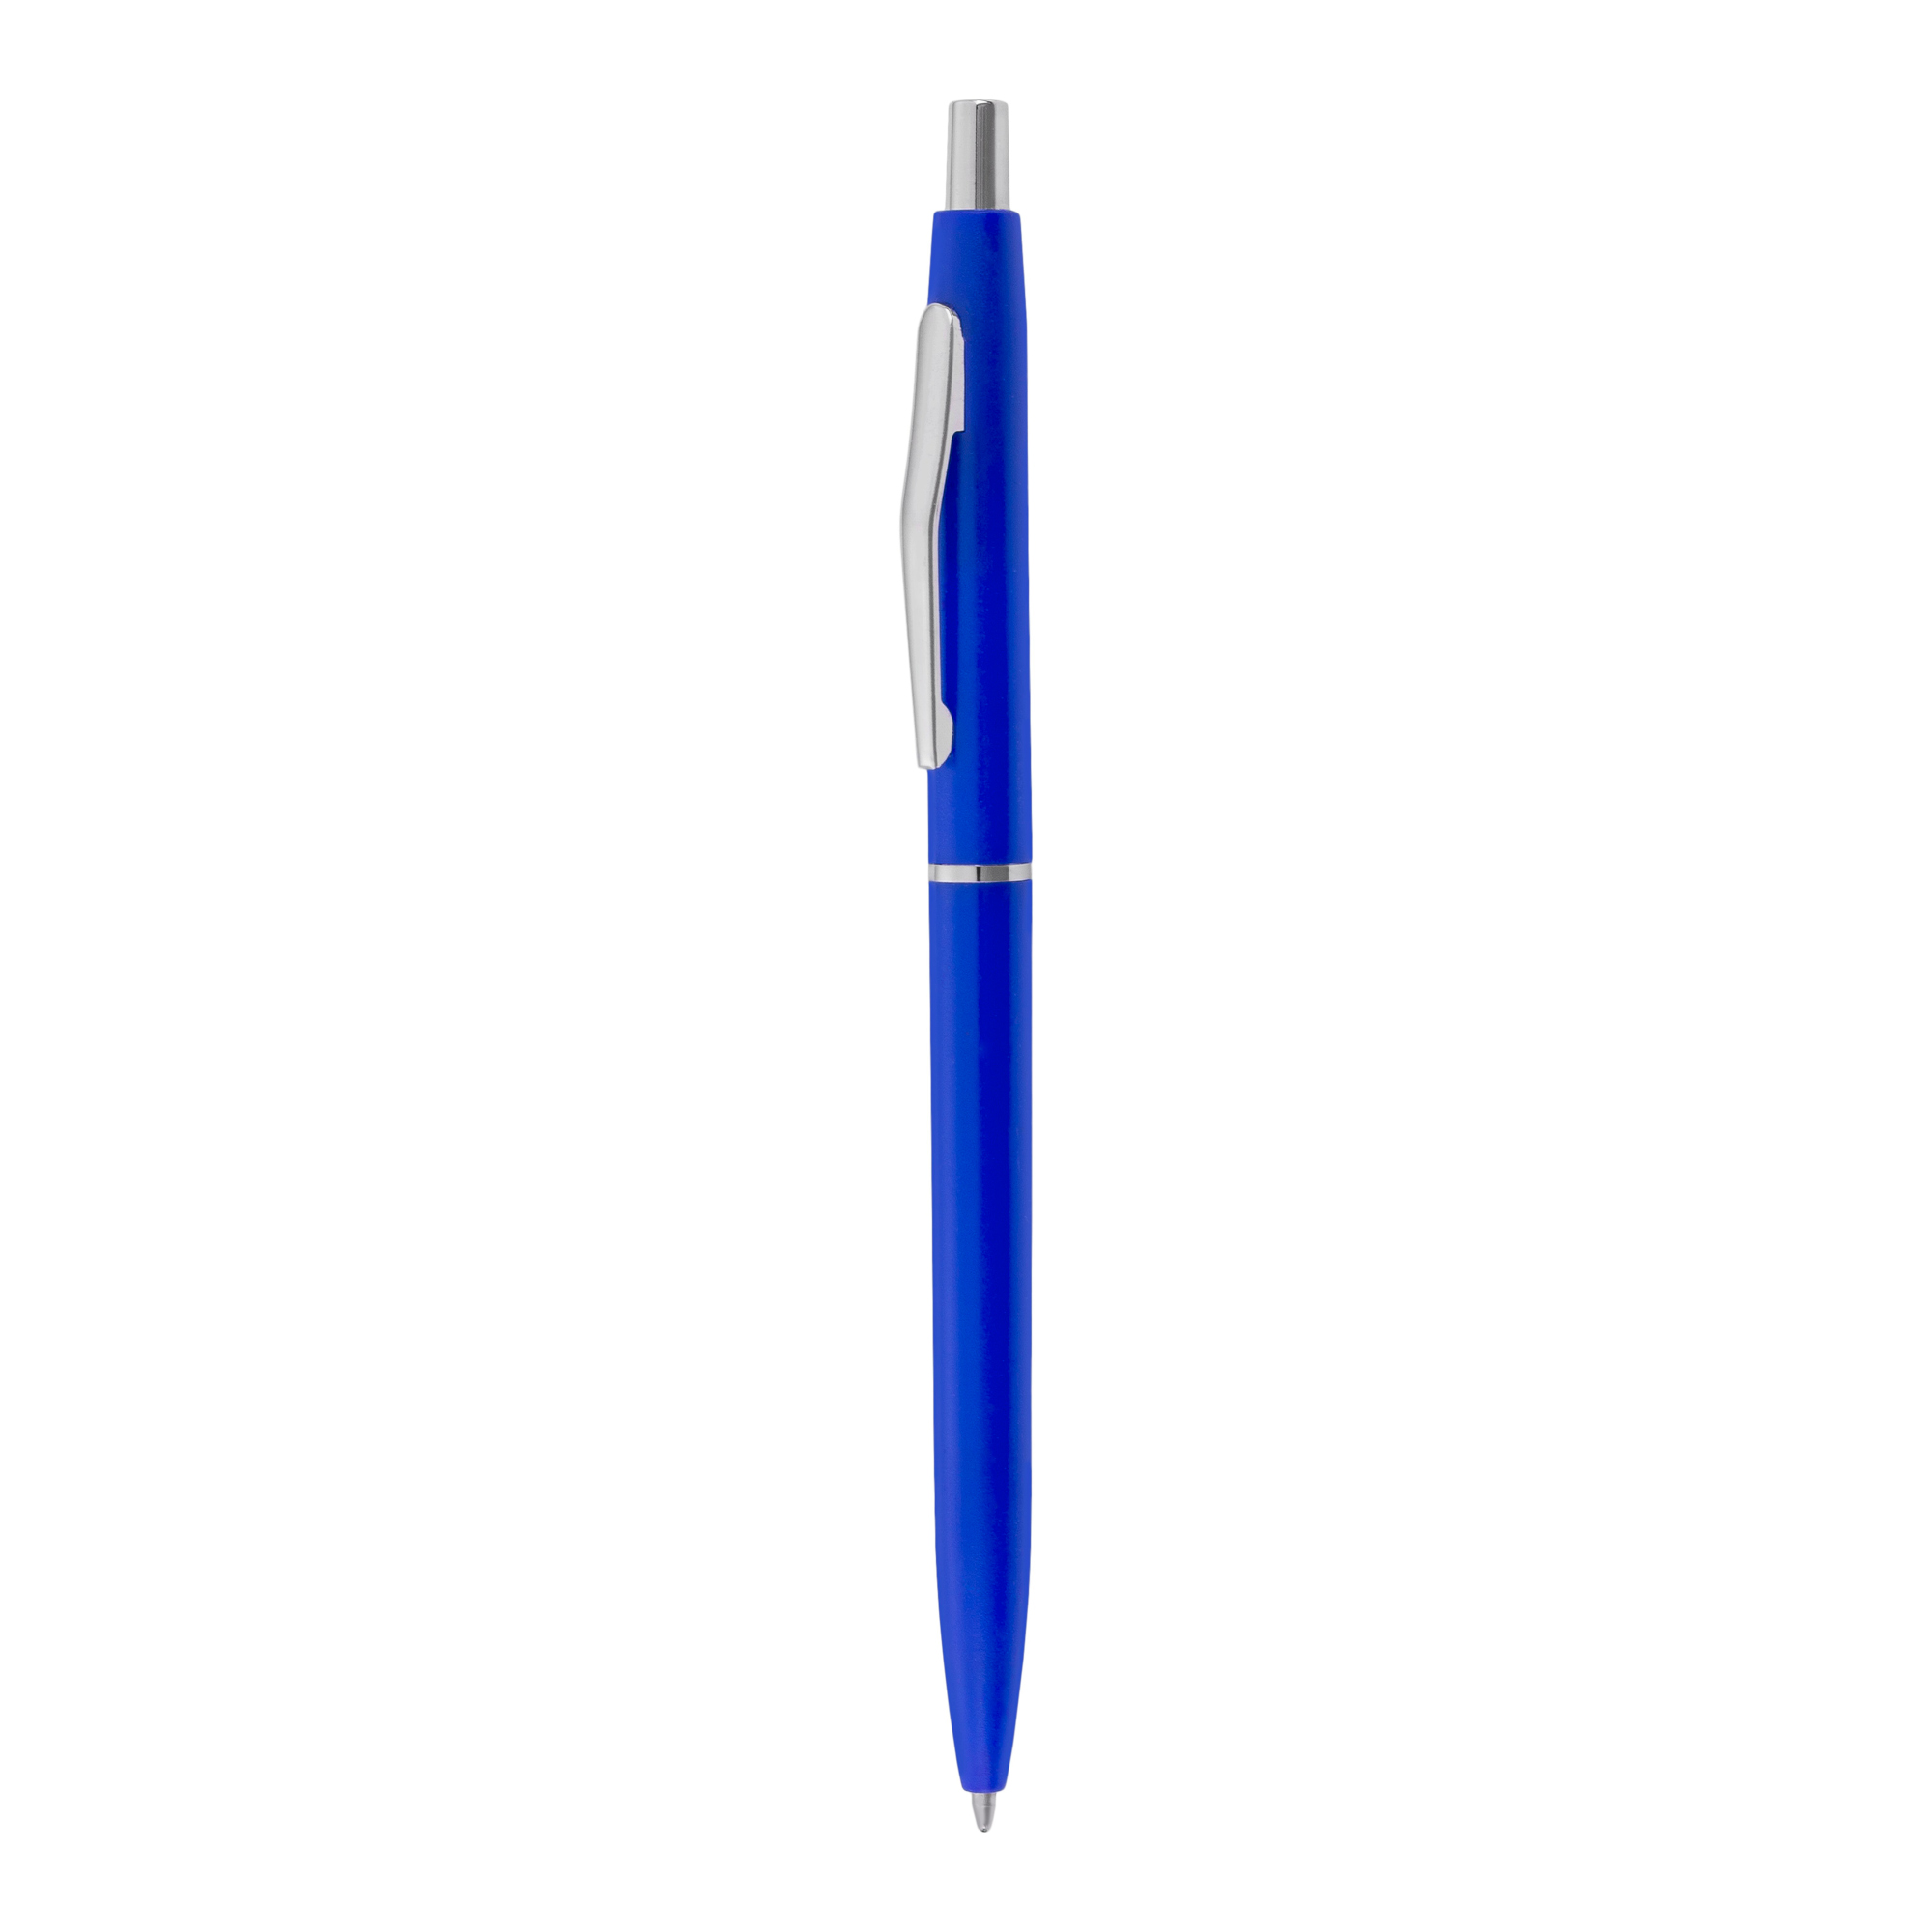 Bolígrafo Suite
Color azul y plateado